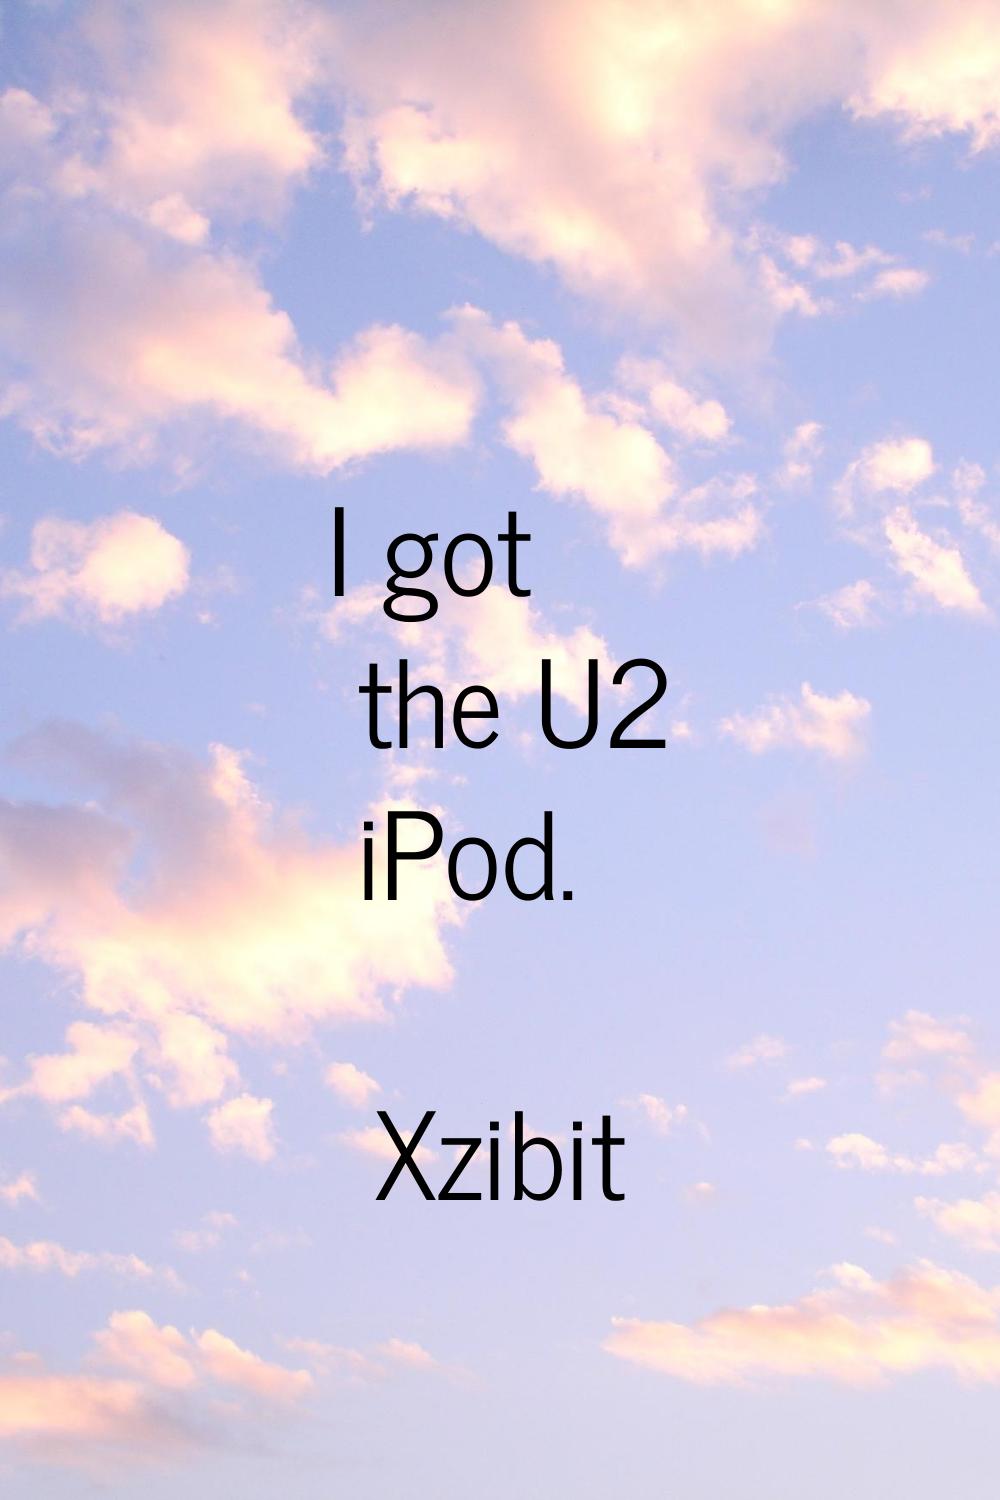 I got the U2 iPod.